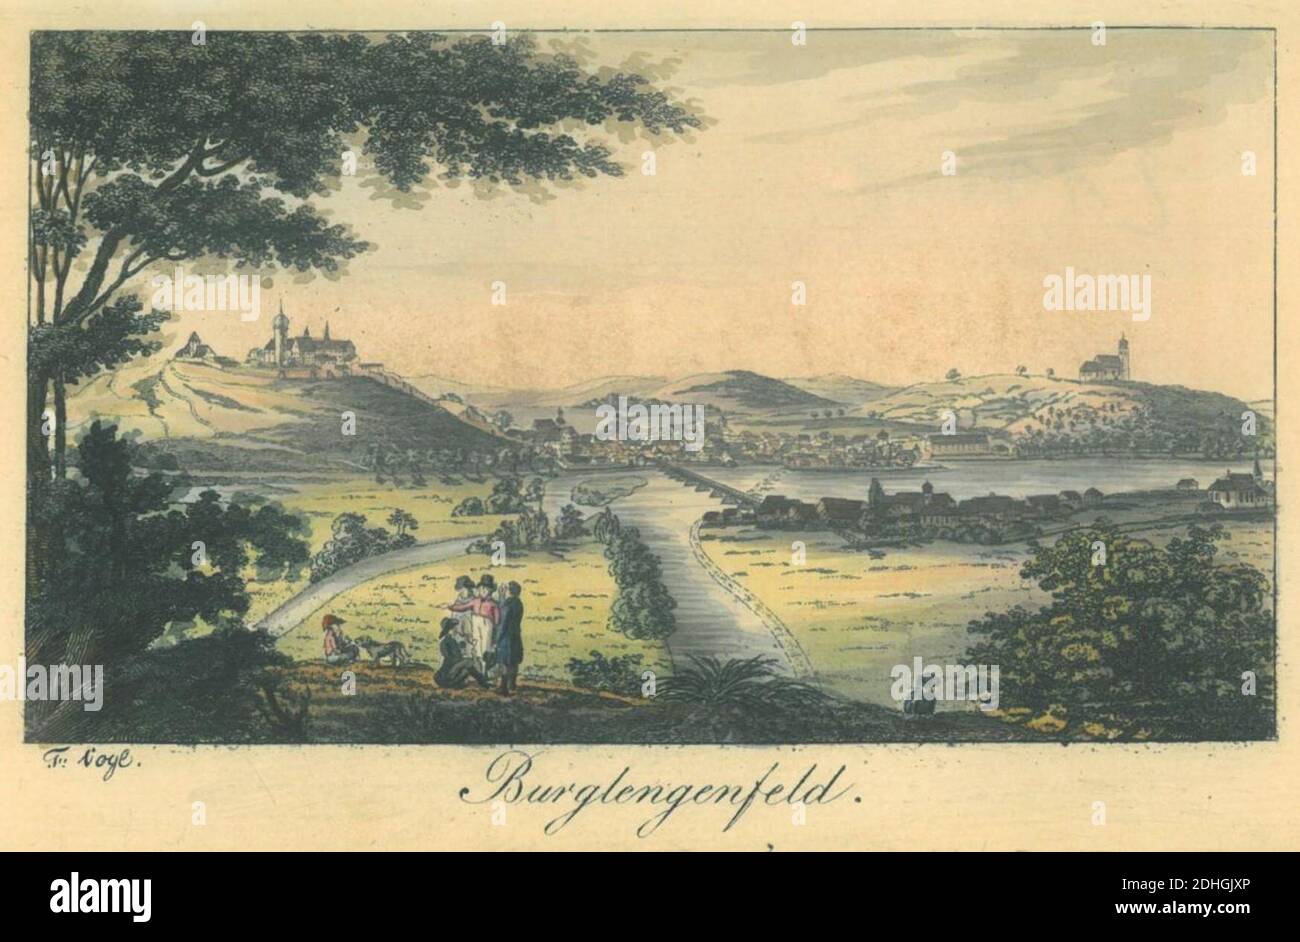 Kupferstich - Burglengenfeld - Fr Vogl - Neuburger Taschenbuch - um 1809. Stock Photo